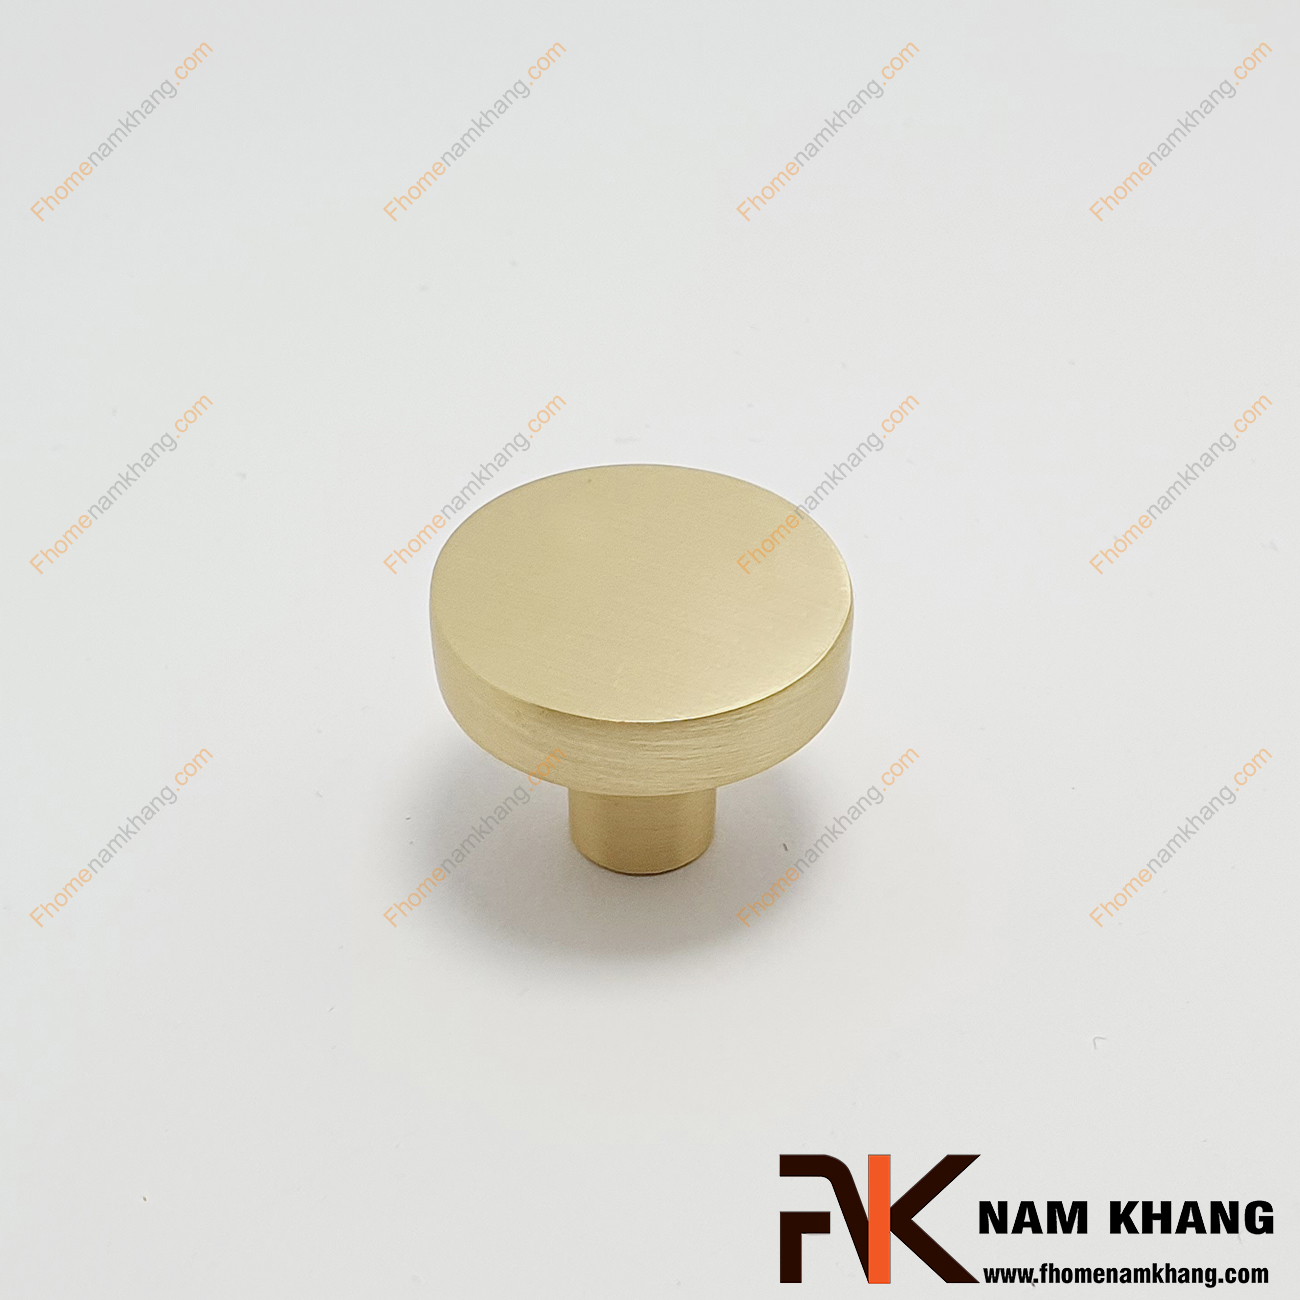 Núm cửa tủ dạng tròn màu vàng xước NK267-VM - mẫu núm cửa tủ dạng tròn trơn đơn giản được sử dụng rất phổ biến trong các dạng tủ kệ, tủ quần áo, ngăn kéo bàn và các dạng tủ nhỏ.